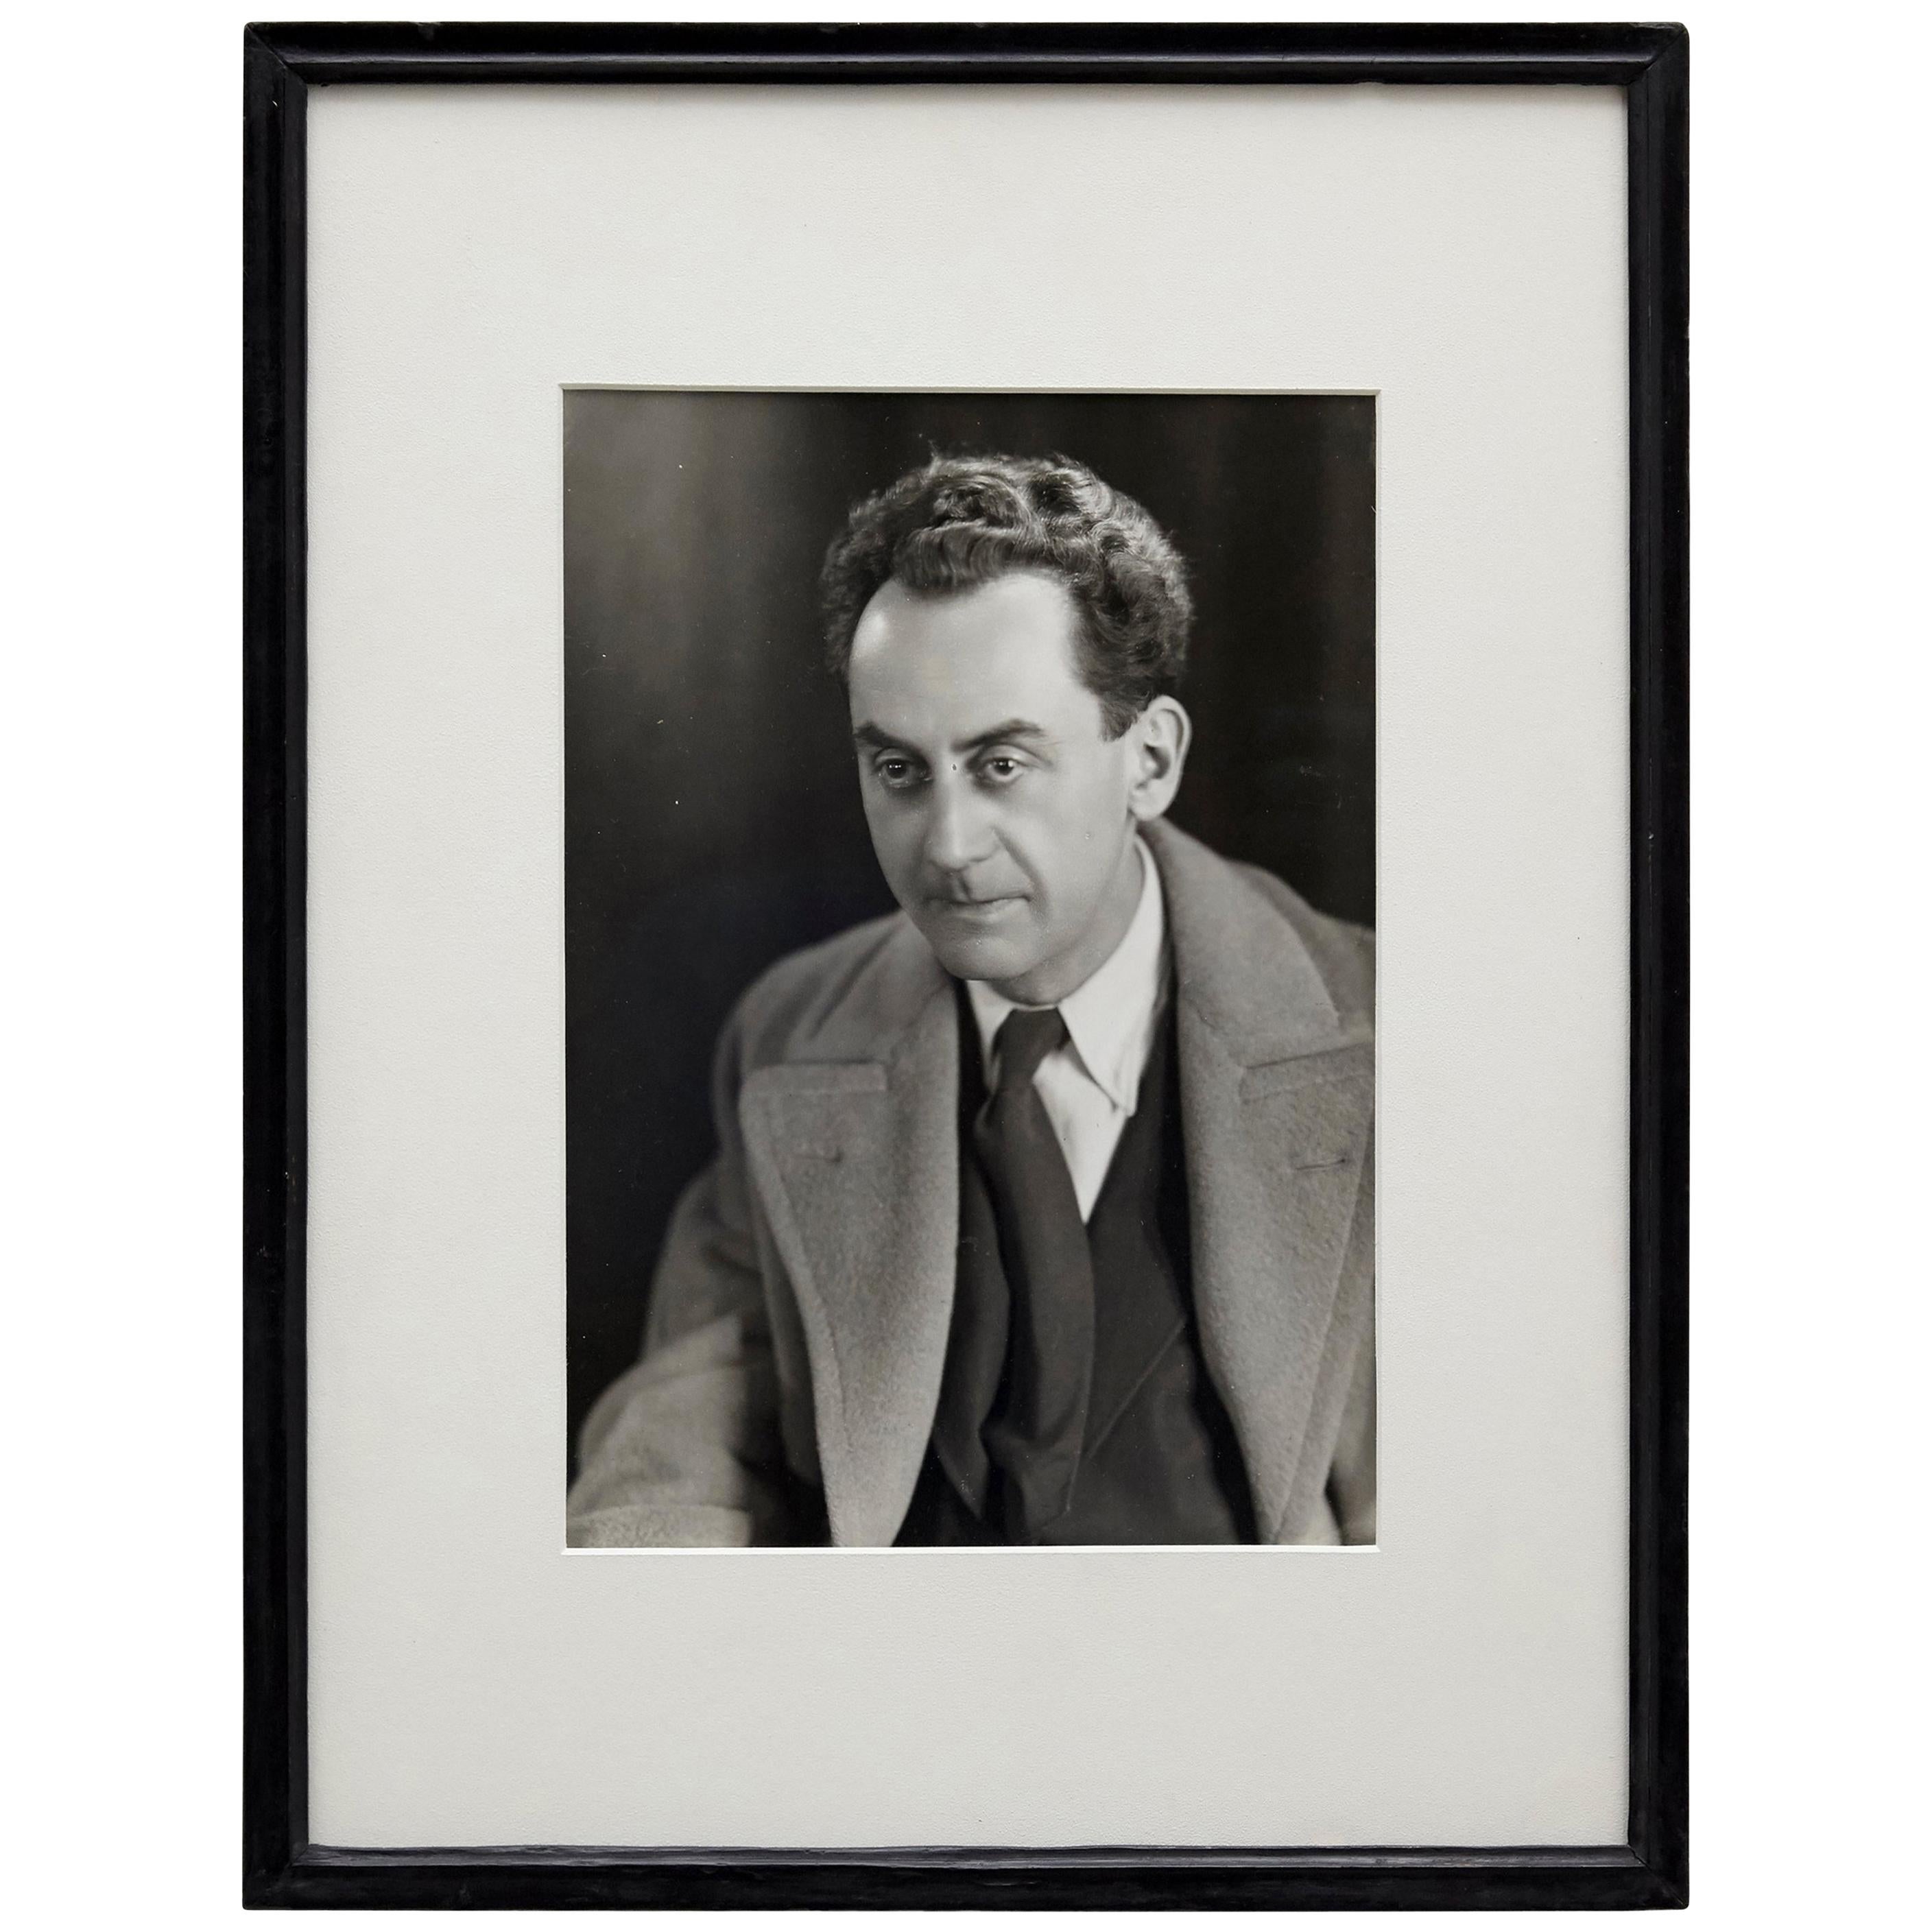 Man Ray Sefportrait Schwarz-Weiß-fotografie